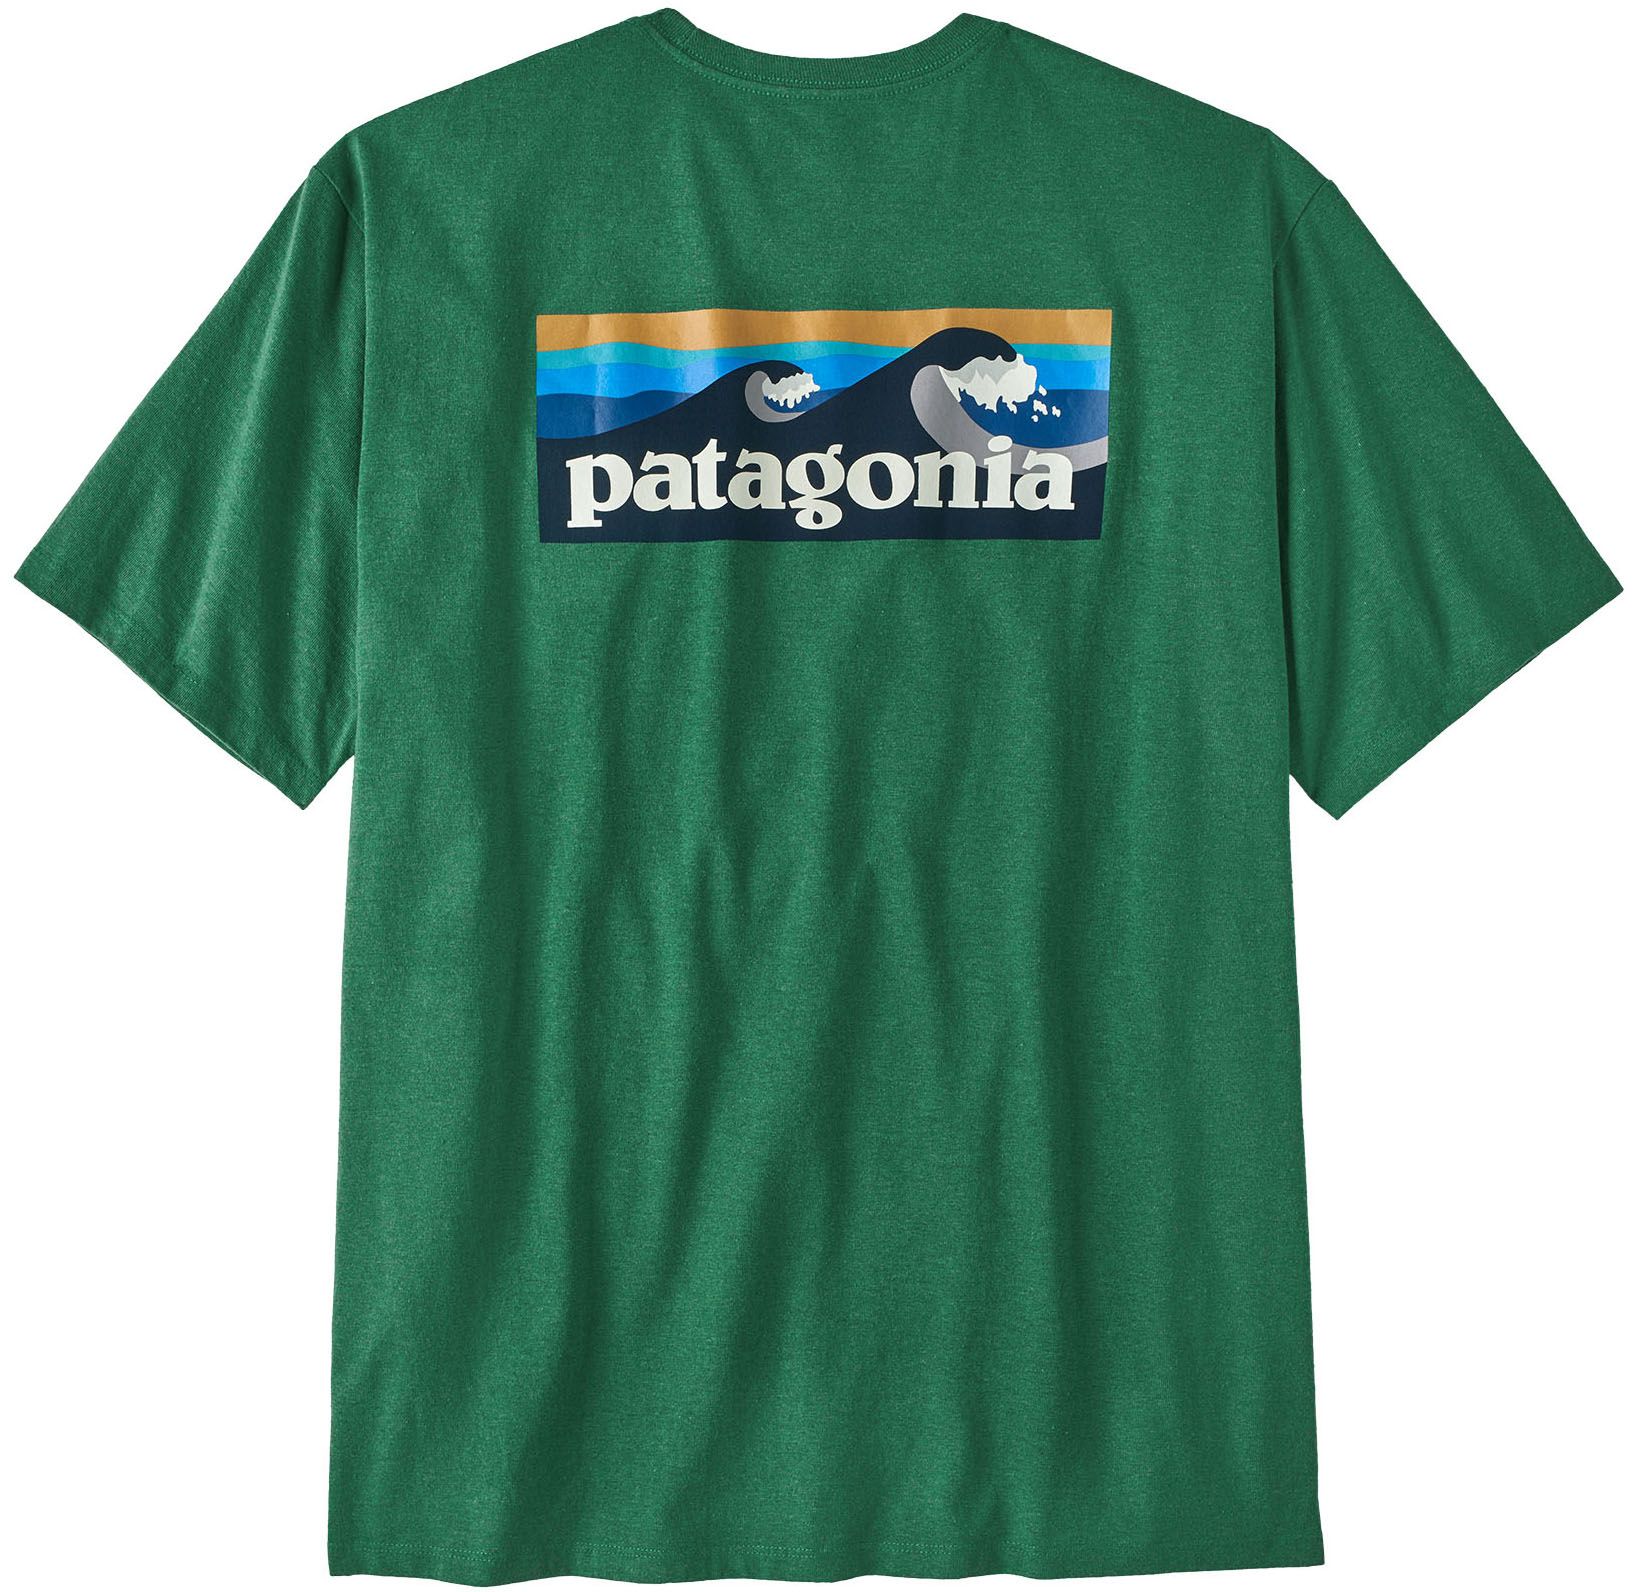 Patagonia Men's Shirts | Public Lands